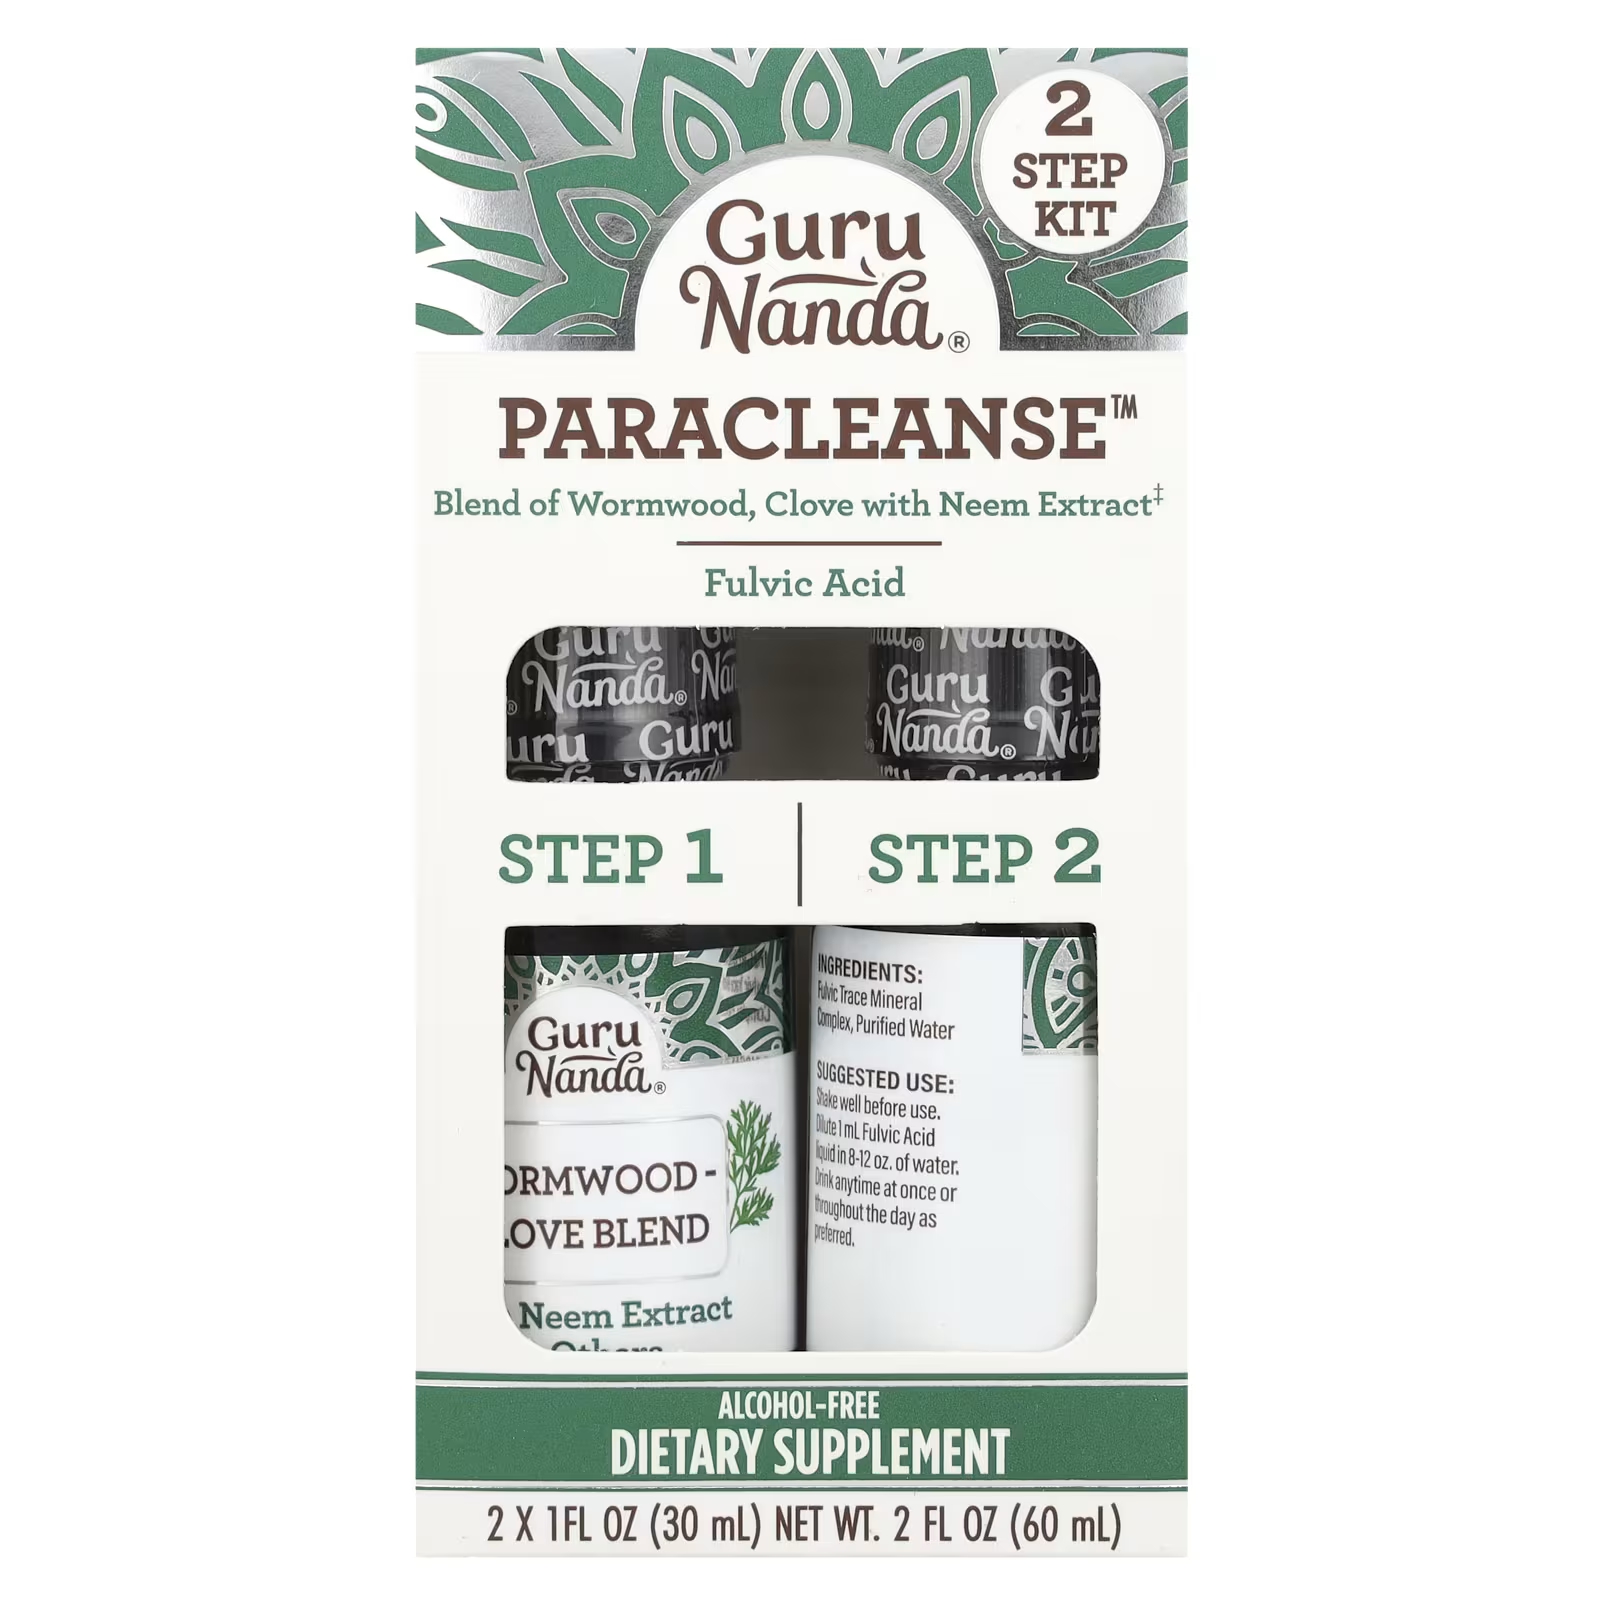 GuruNanda Paracleanse 2 Step Kit без спирта, 2 штуки по 1 жидкой унции (30 мл) каждая